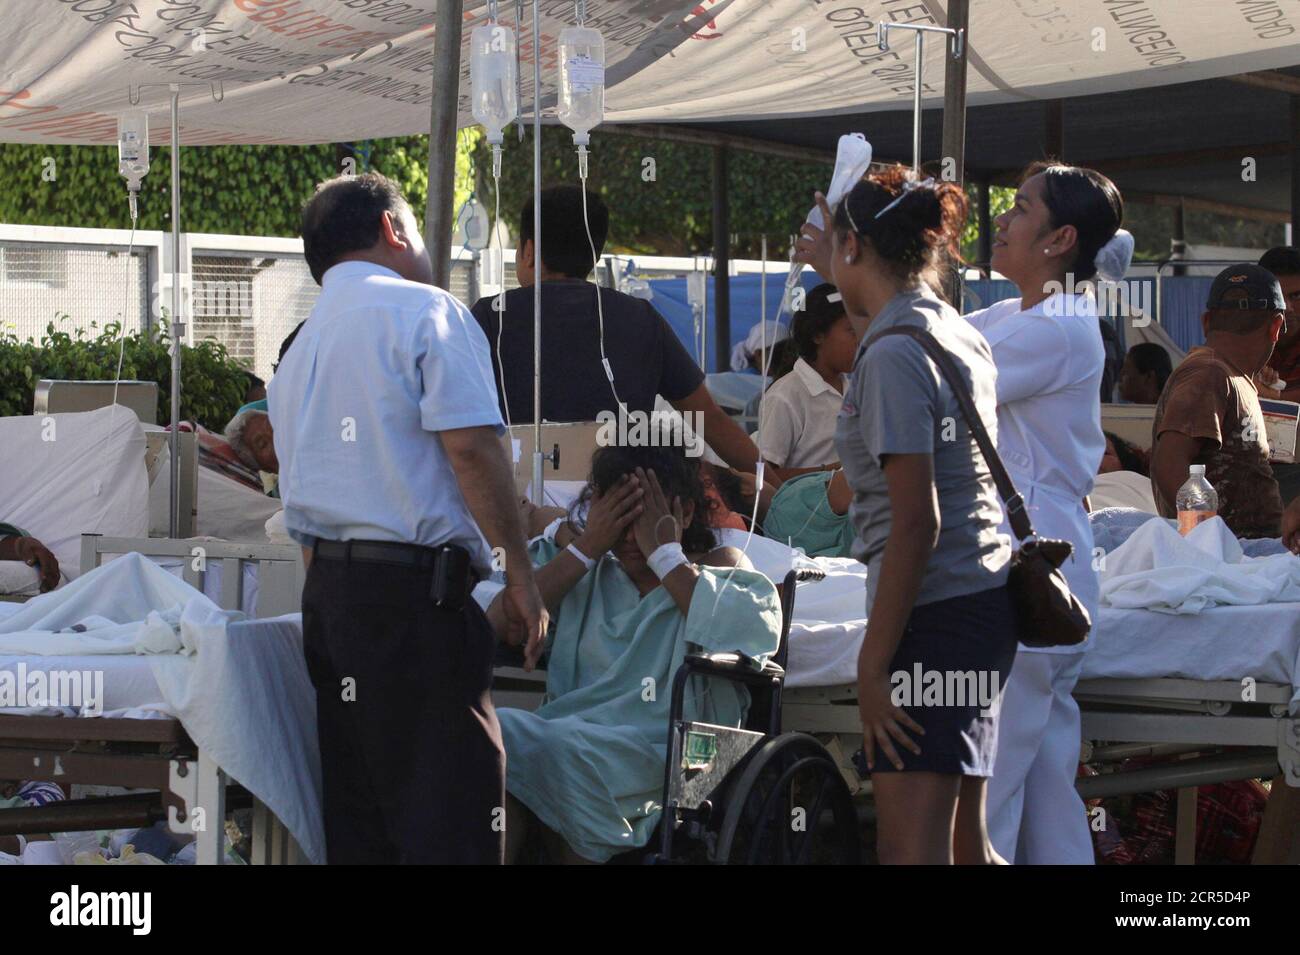 Ein Patient im Rollstuhl wird von einer Krankenschwester in einer Notaufnahme betreut, nachdem er am Dienstag in Ometepec im mexikanischen Bundesstaat Guerrero, dem 20. März 2012, aus einem Krankenhaus evakuiert wurde, das durch ein Erdbeben beschädigt wurde. Das Erdbeben der Stärke 7.4 traf am stärksten im südwestlichen Bundesstaat Guerrero, wo rund 800 Häuser beschädigt wurden, sagten Beamte. Der Gouverneur des Bundesstaates Angel Aguirre sagte, er habe Berichte über die Häuser niedergeschlagen, obwohl die staatlichen Behörden dies nicht bestätigen konnten. REUTERS/Jacob Garcia (MEXIKO - Tags: KATASTROPHE) Stockfoto